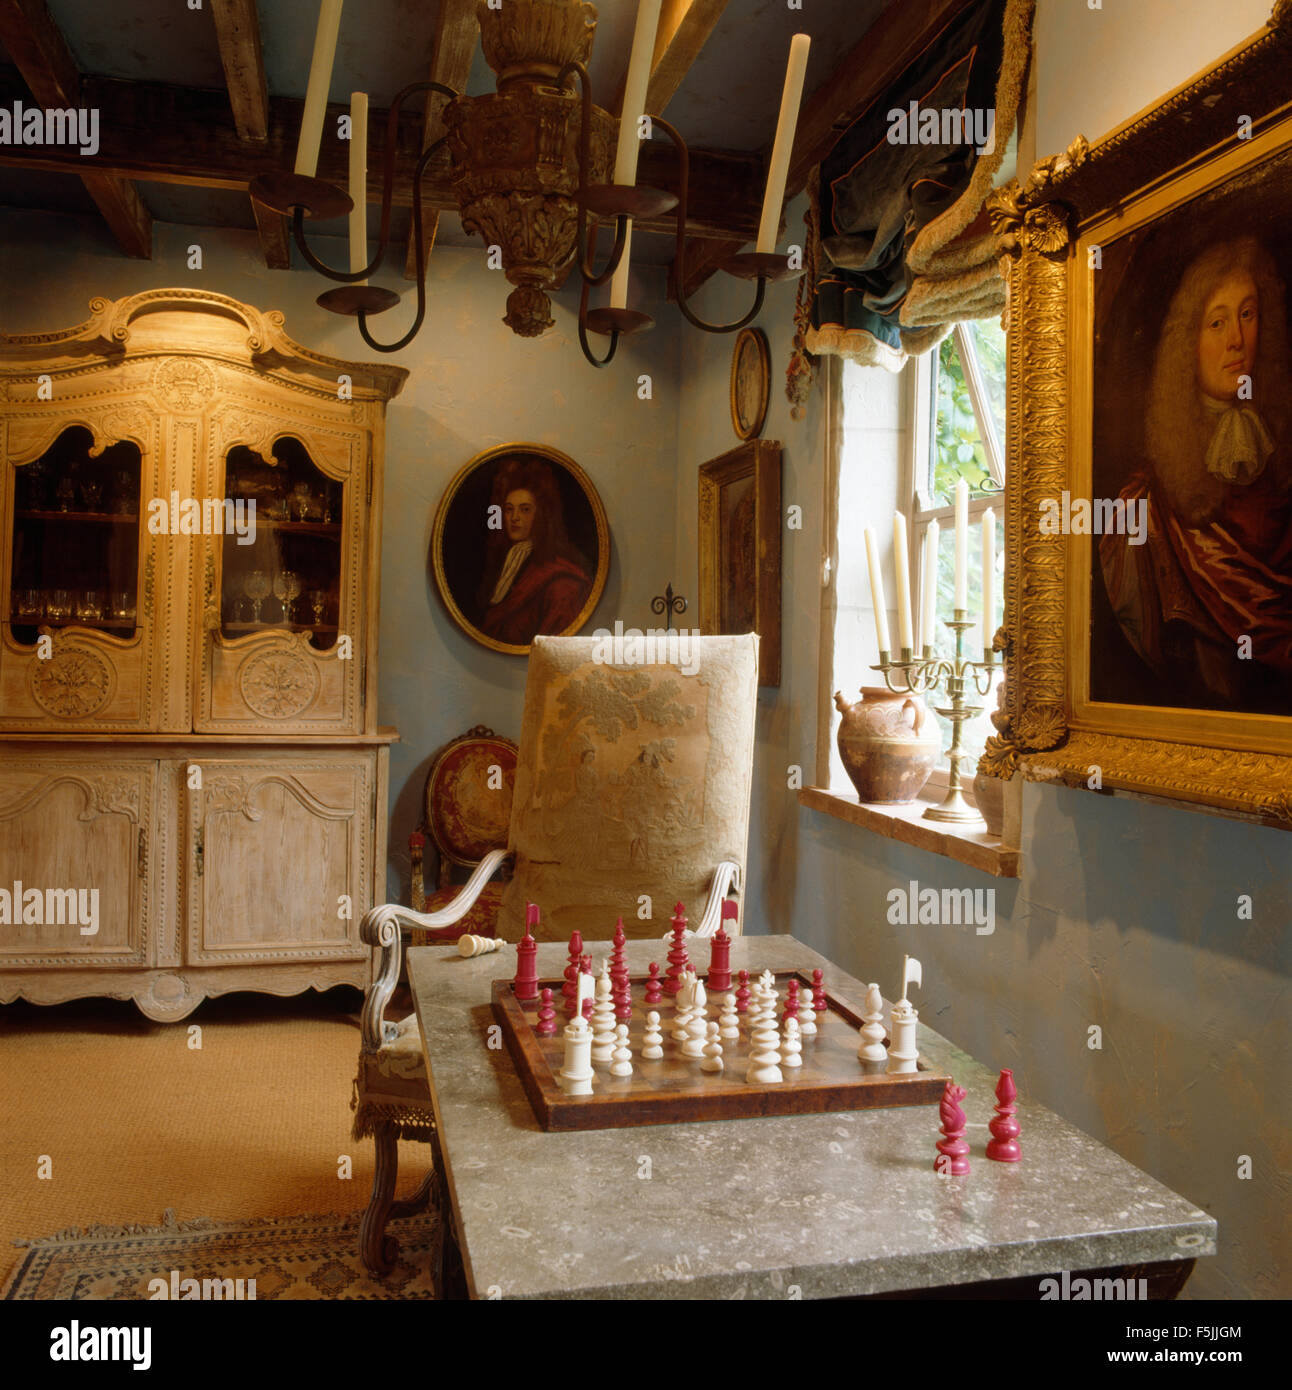 Kerzen in Metall Kronleuchter oben Marmortisch mit einem Schachspiel in einem Land-Wohnzimmer mit einem antiken Schrank Stockfoto